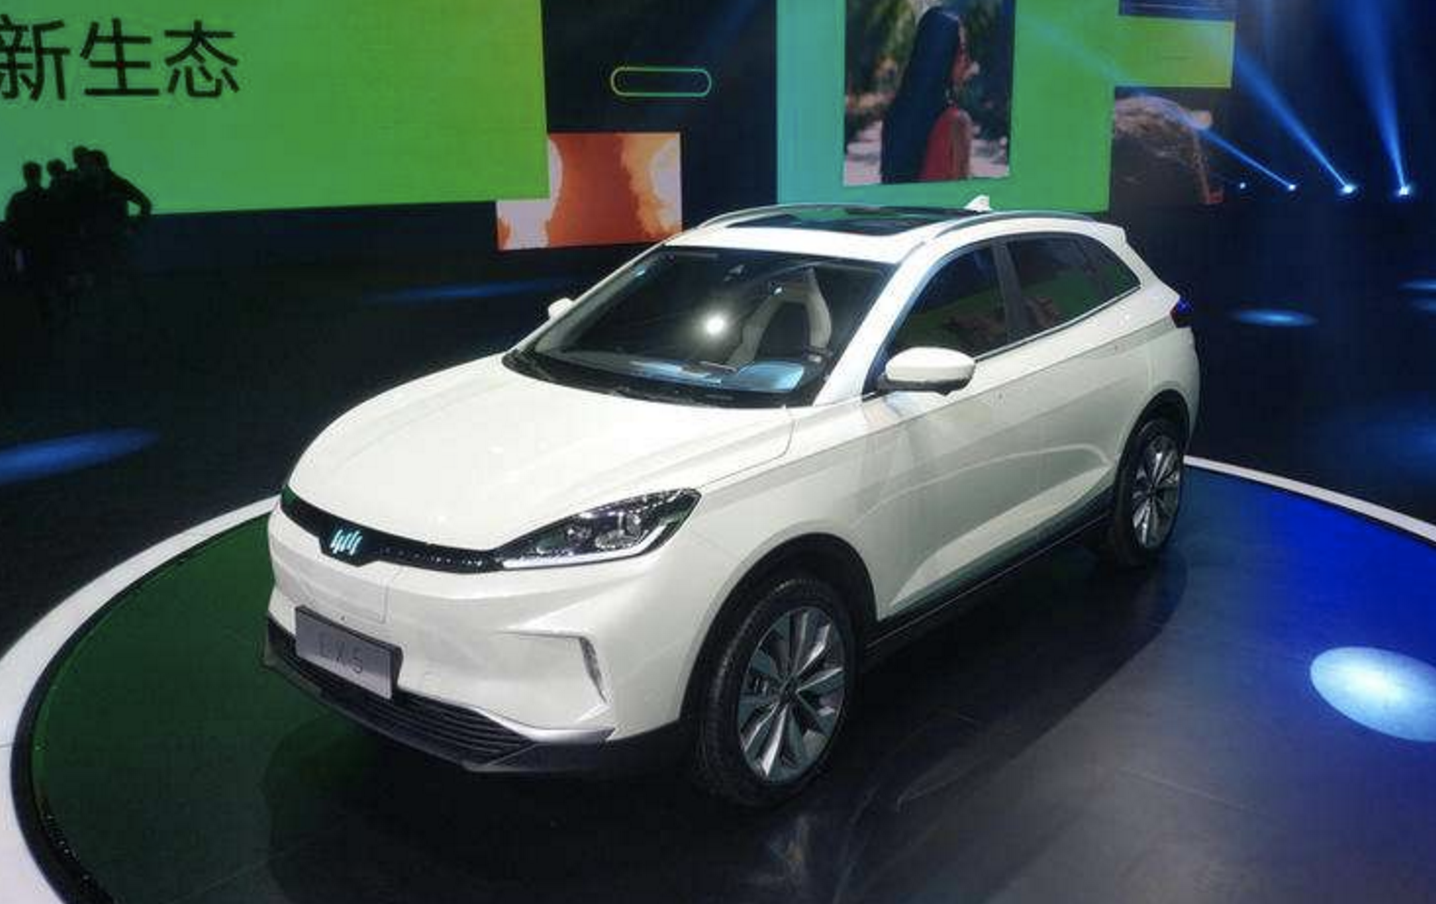 威马汽车品牌正式发布 首款纯电动SUV亮相 - EV视界